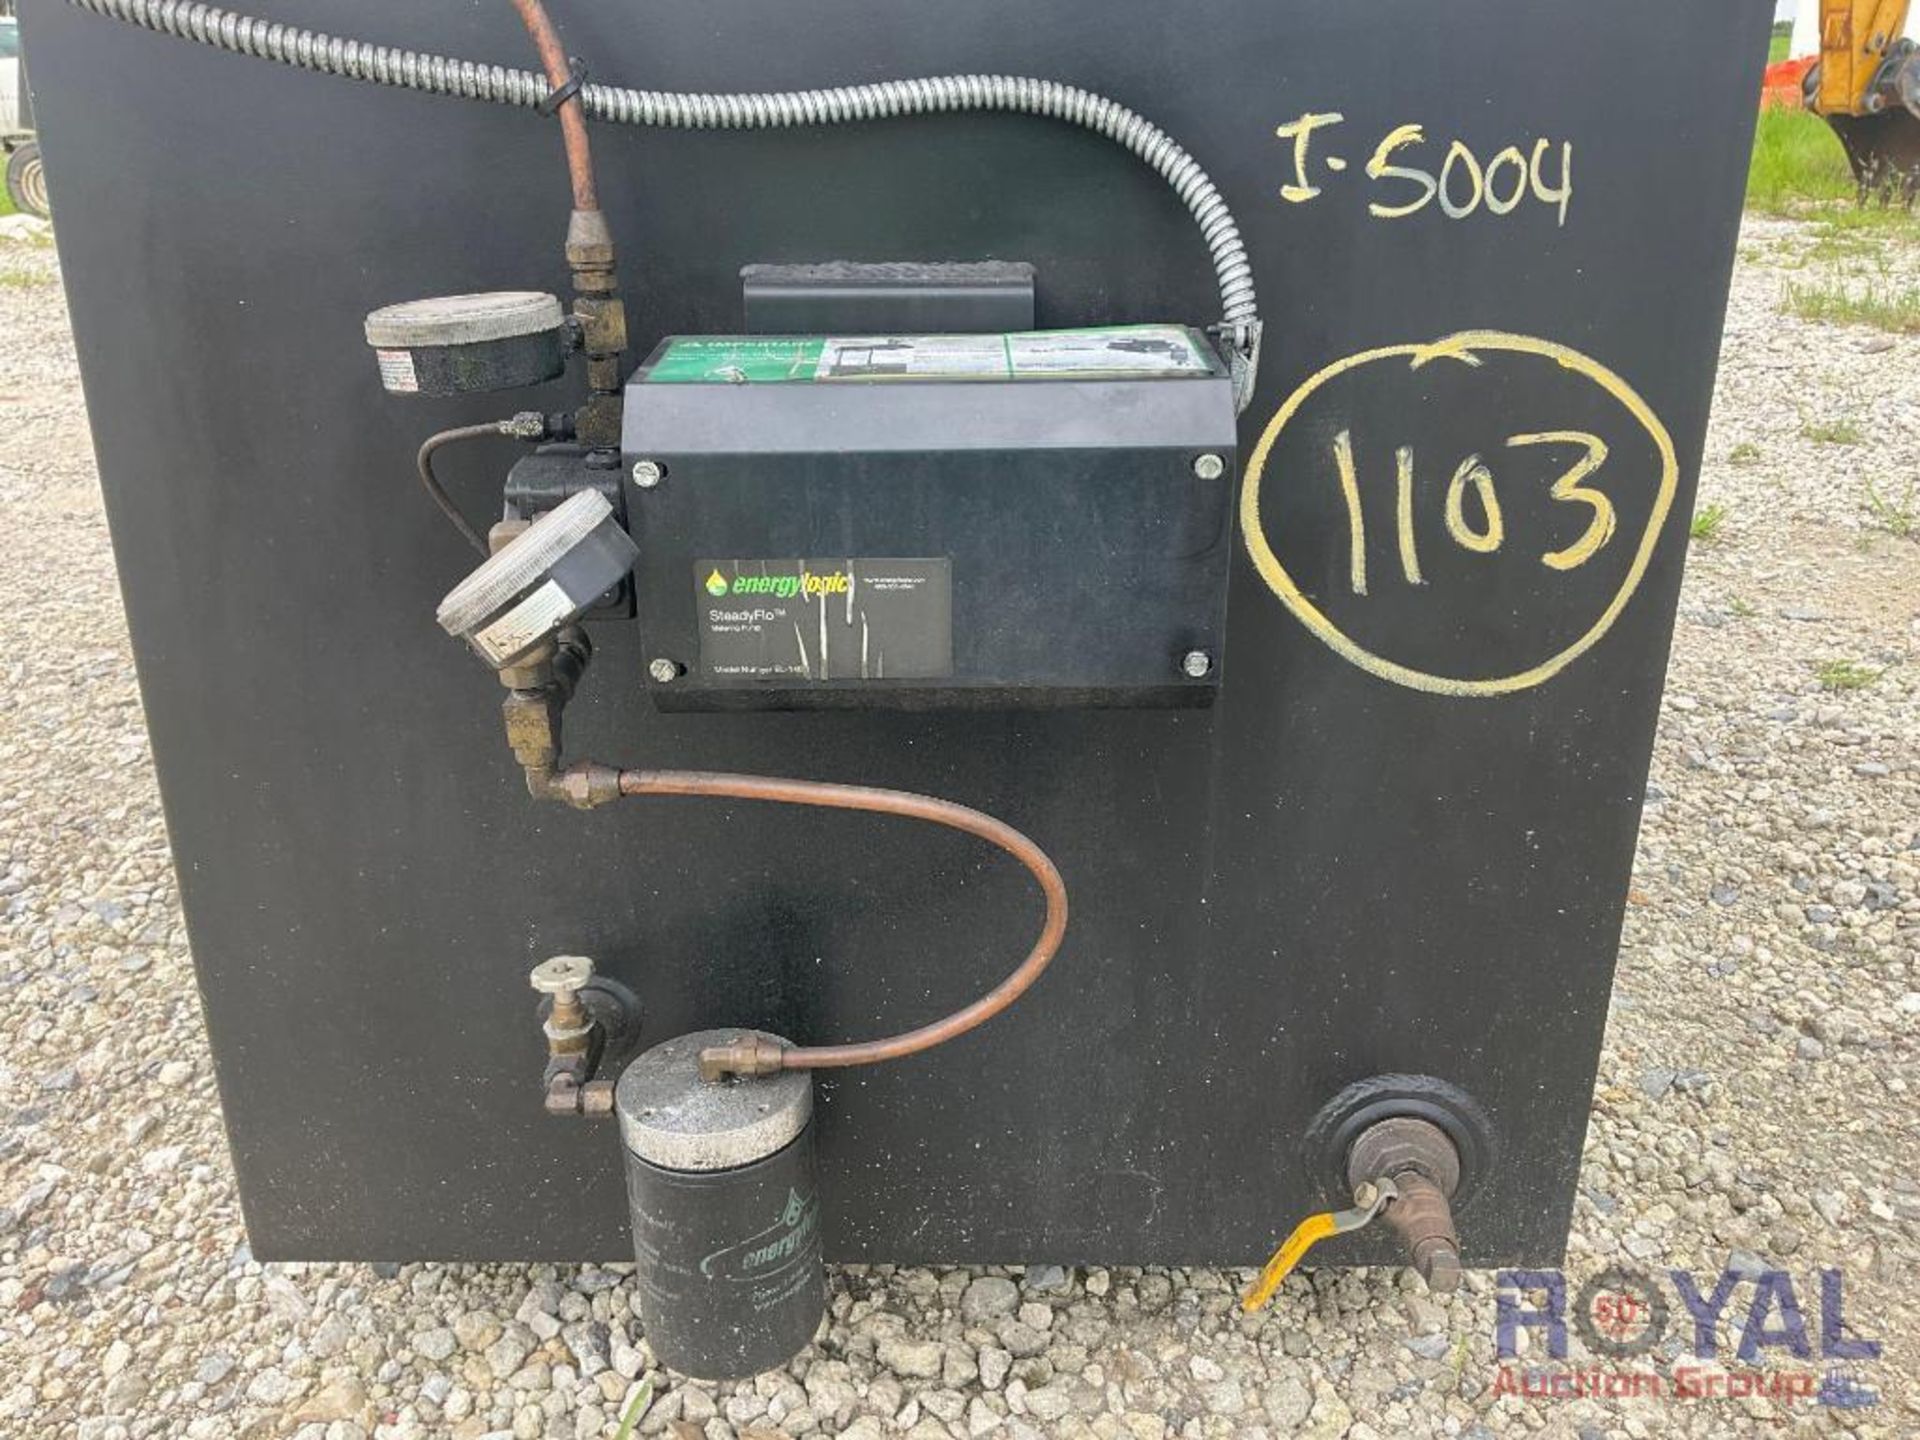 Energylogic EL 140H Waste Oil Heating System - Image 13 of 14